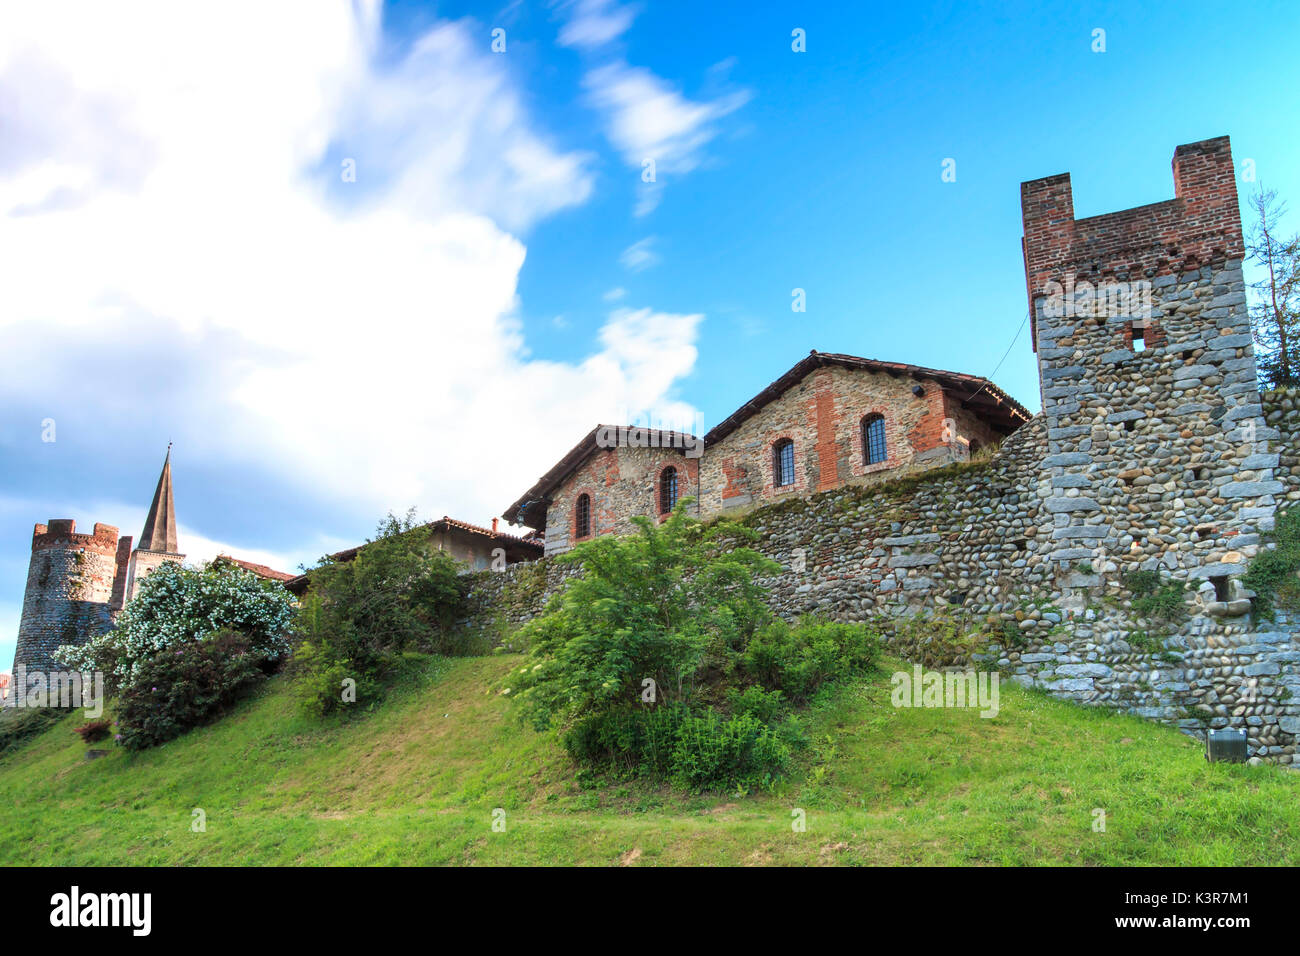 Europa, Italia, Piamonte, Biella. Pueblo medieval de Ricetto di Candelo utilizada como refugio en tiempos de ataque durante la Edad Media. Foto de stock